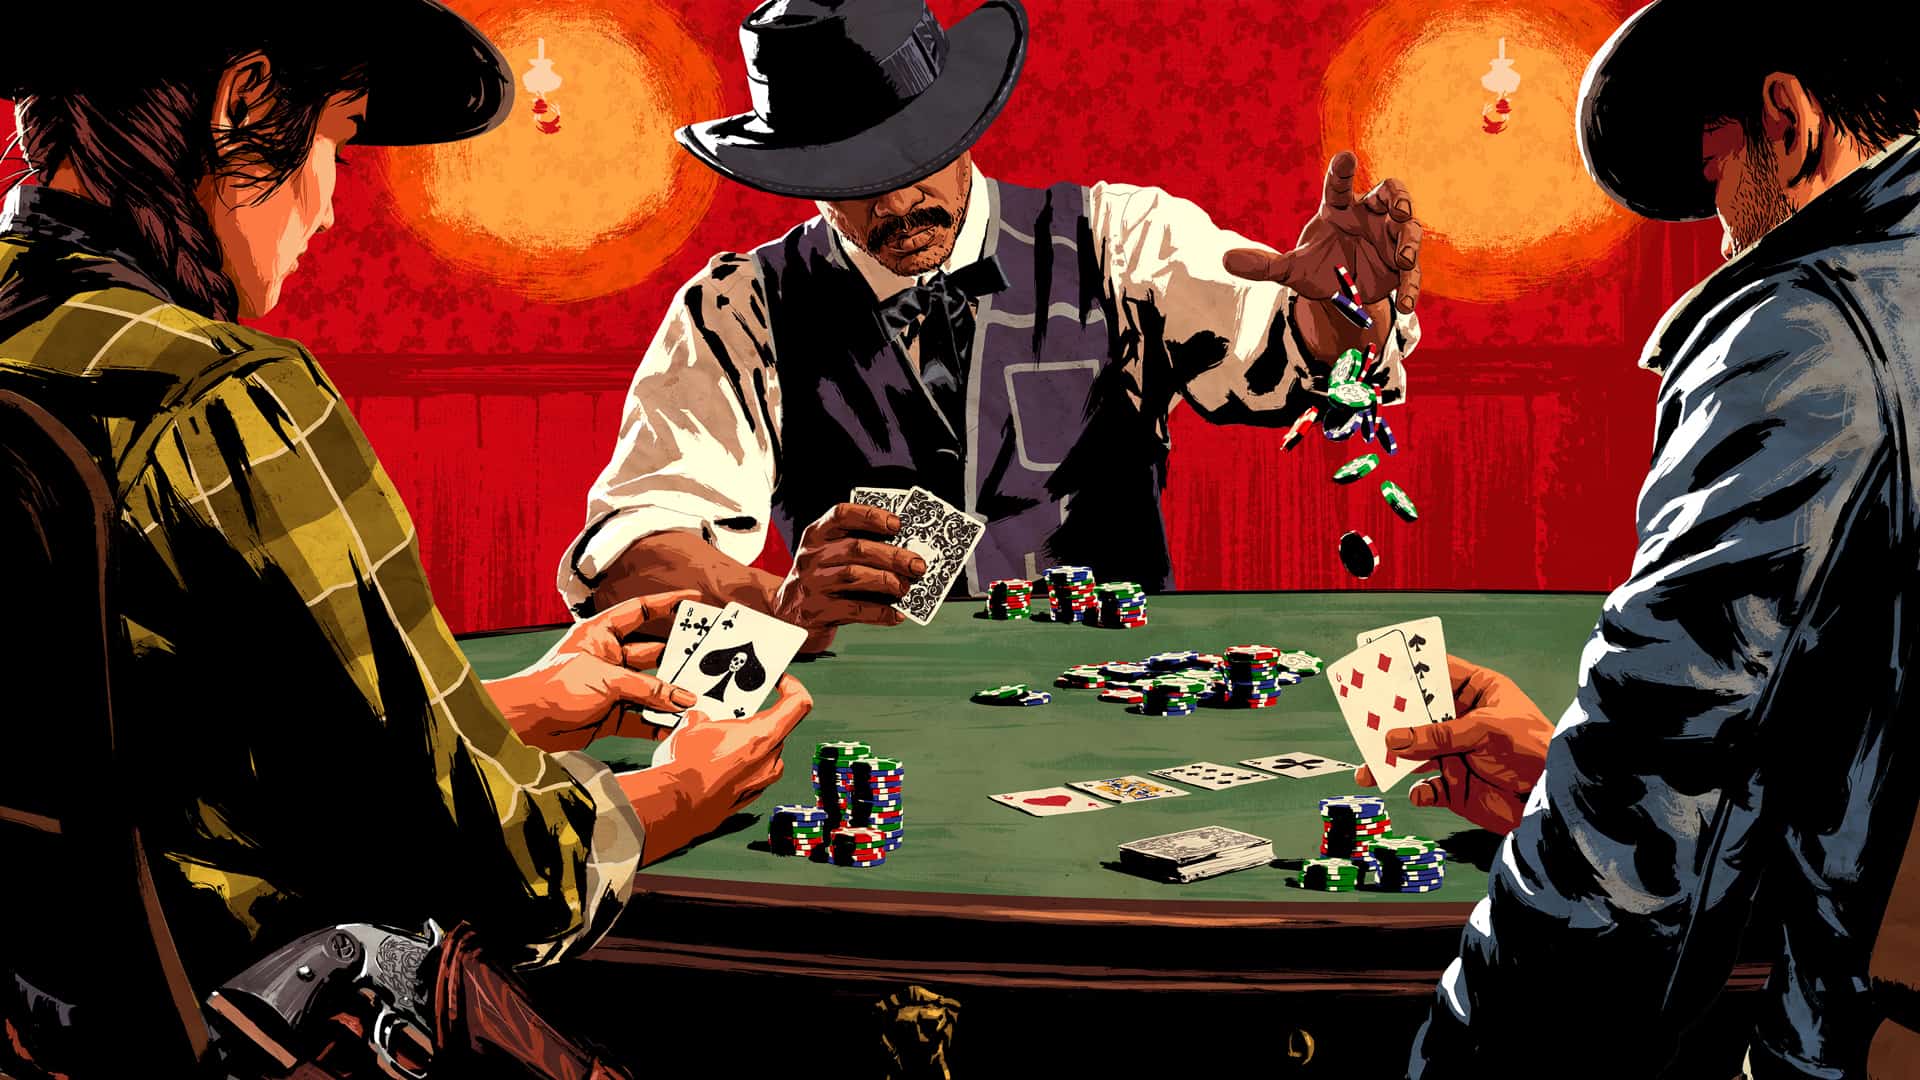 Cách chơi poker chuyên nghiệp, kiếm tiền triệu mỗi ngày nhờ 3 bí quyết này - Ảnh 2